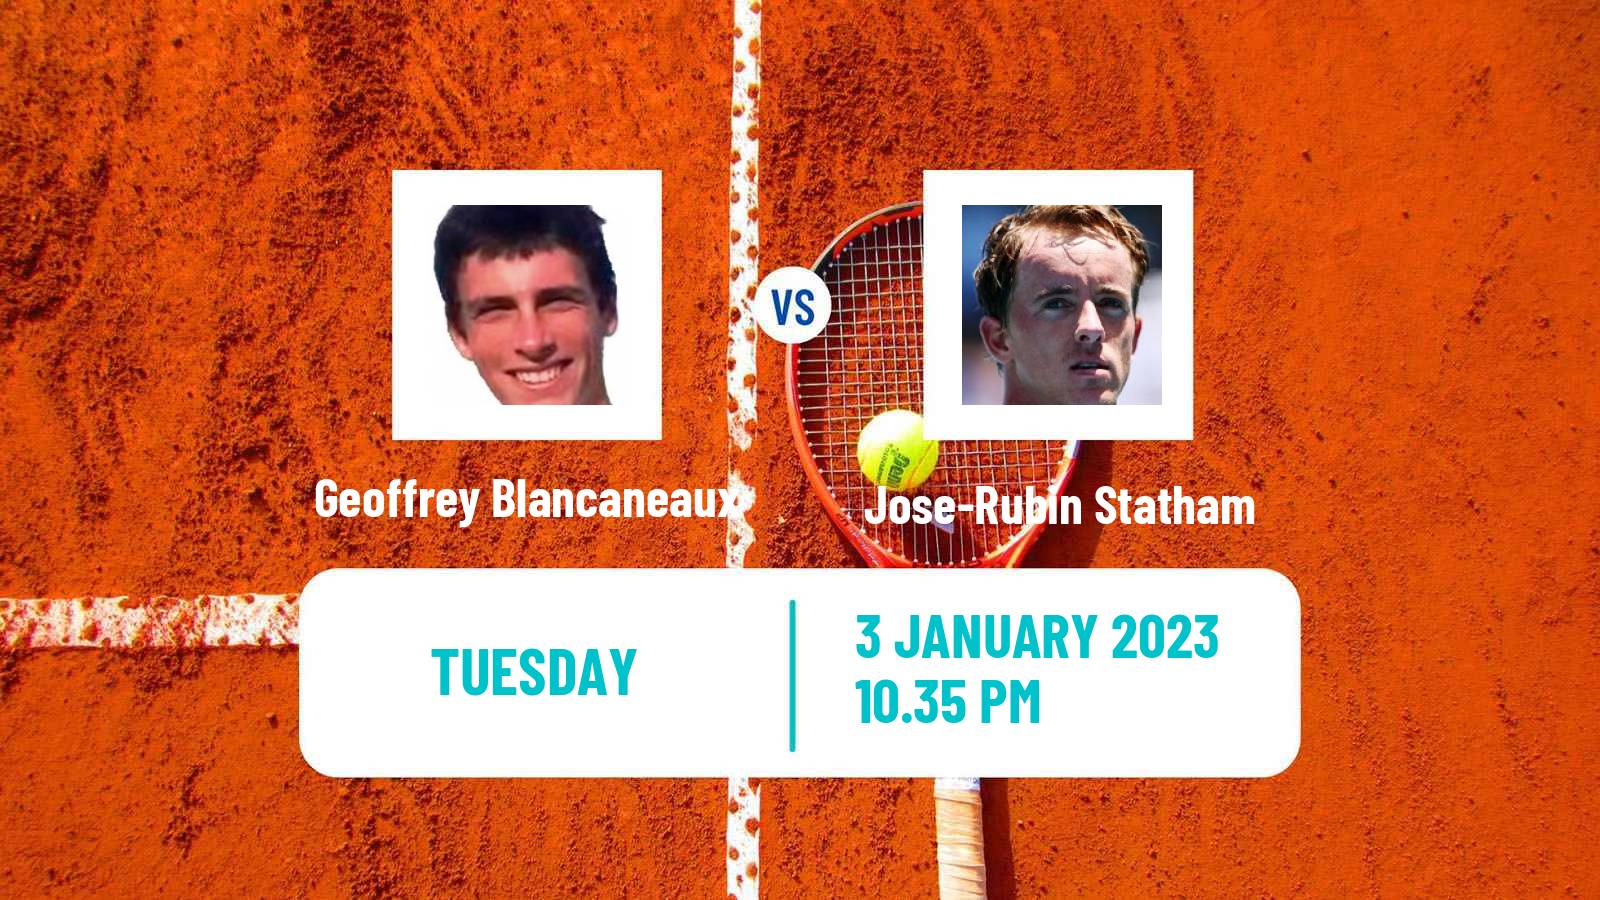 Tennis ATP Challenger Geoffrey Blancaneaux - Jose-Rubin Statham